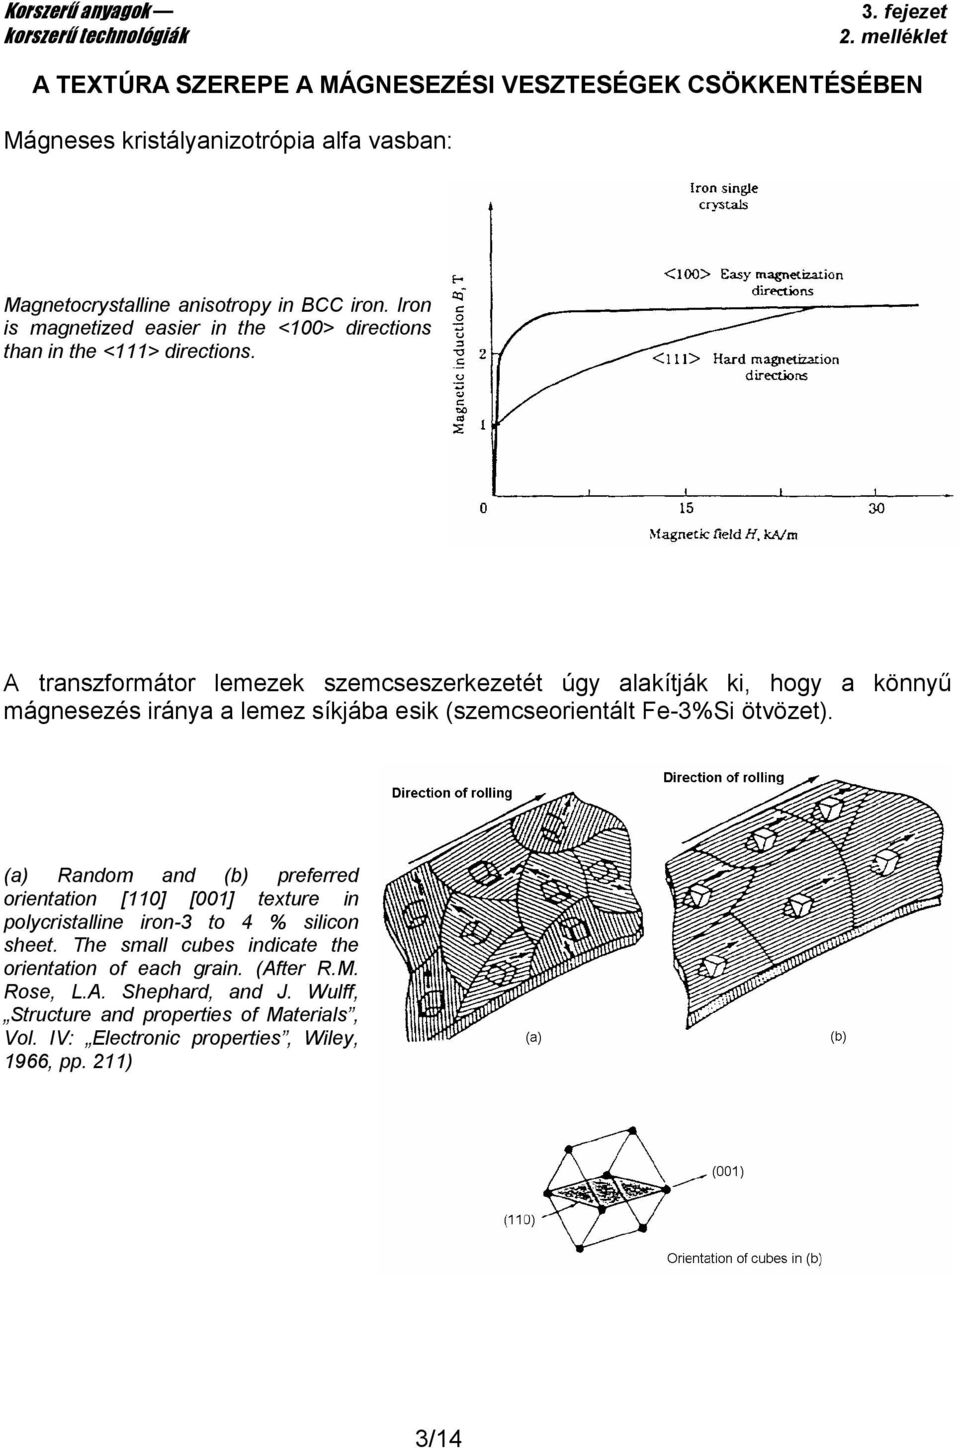 A transzformátor lemezek szemcseszerkezetét úgy alakítják ki, hogy a könnyő mágnesezés iránya a lemez síkjába esik (szemcseorientált Fe-3%Si ötvözet).